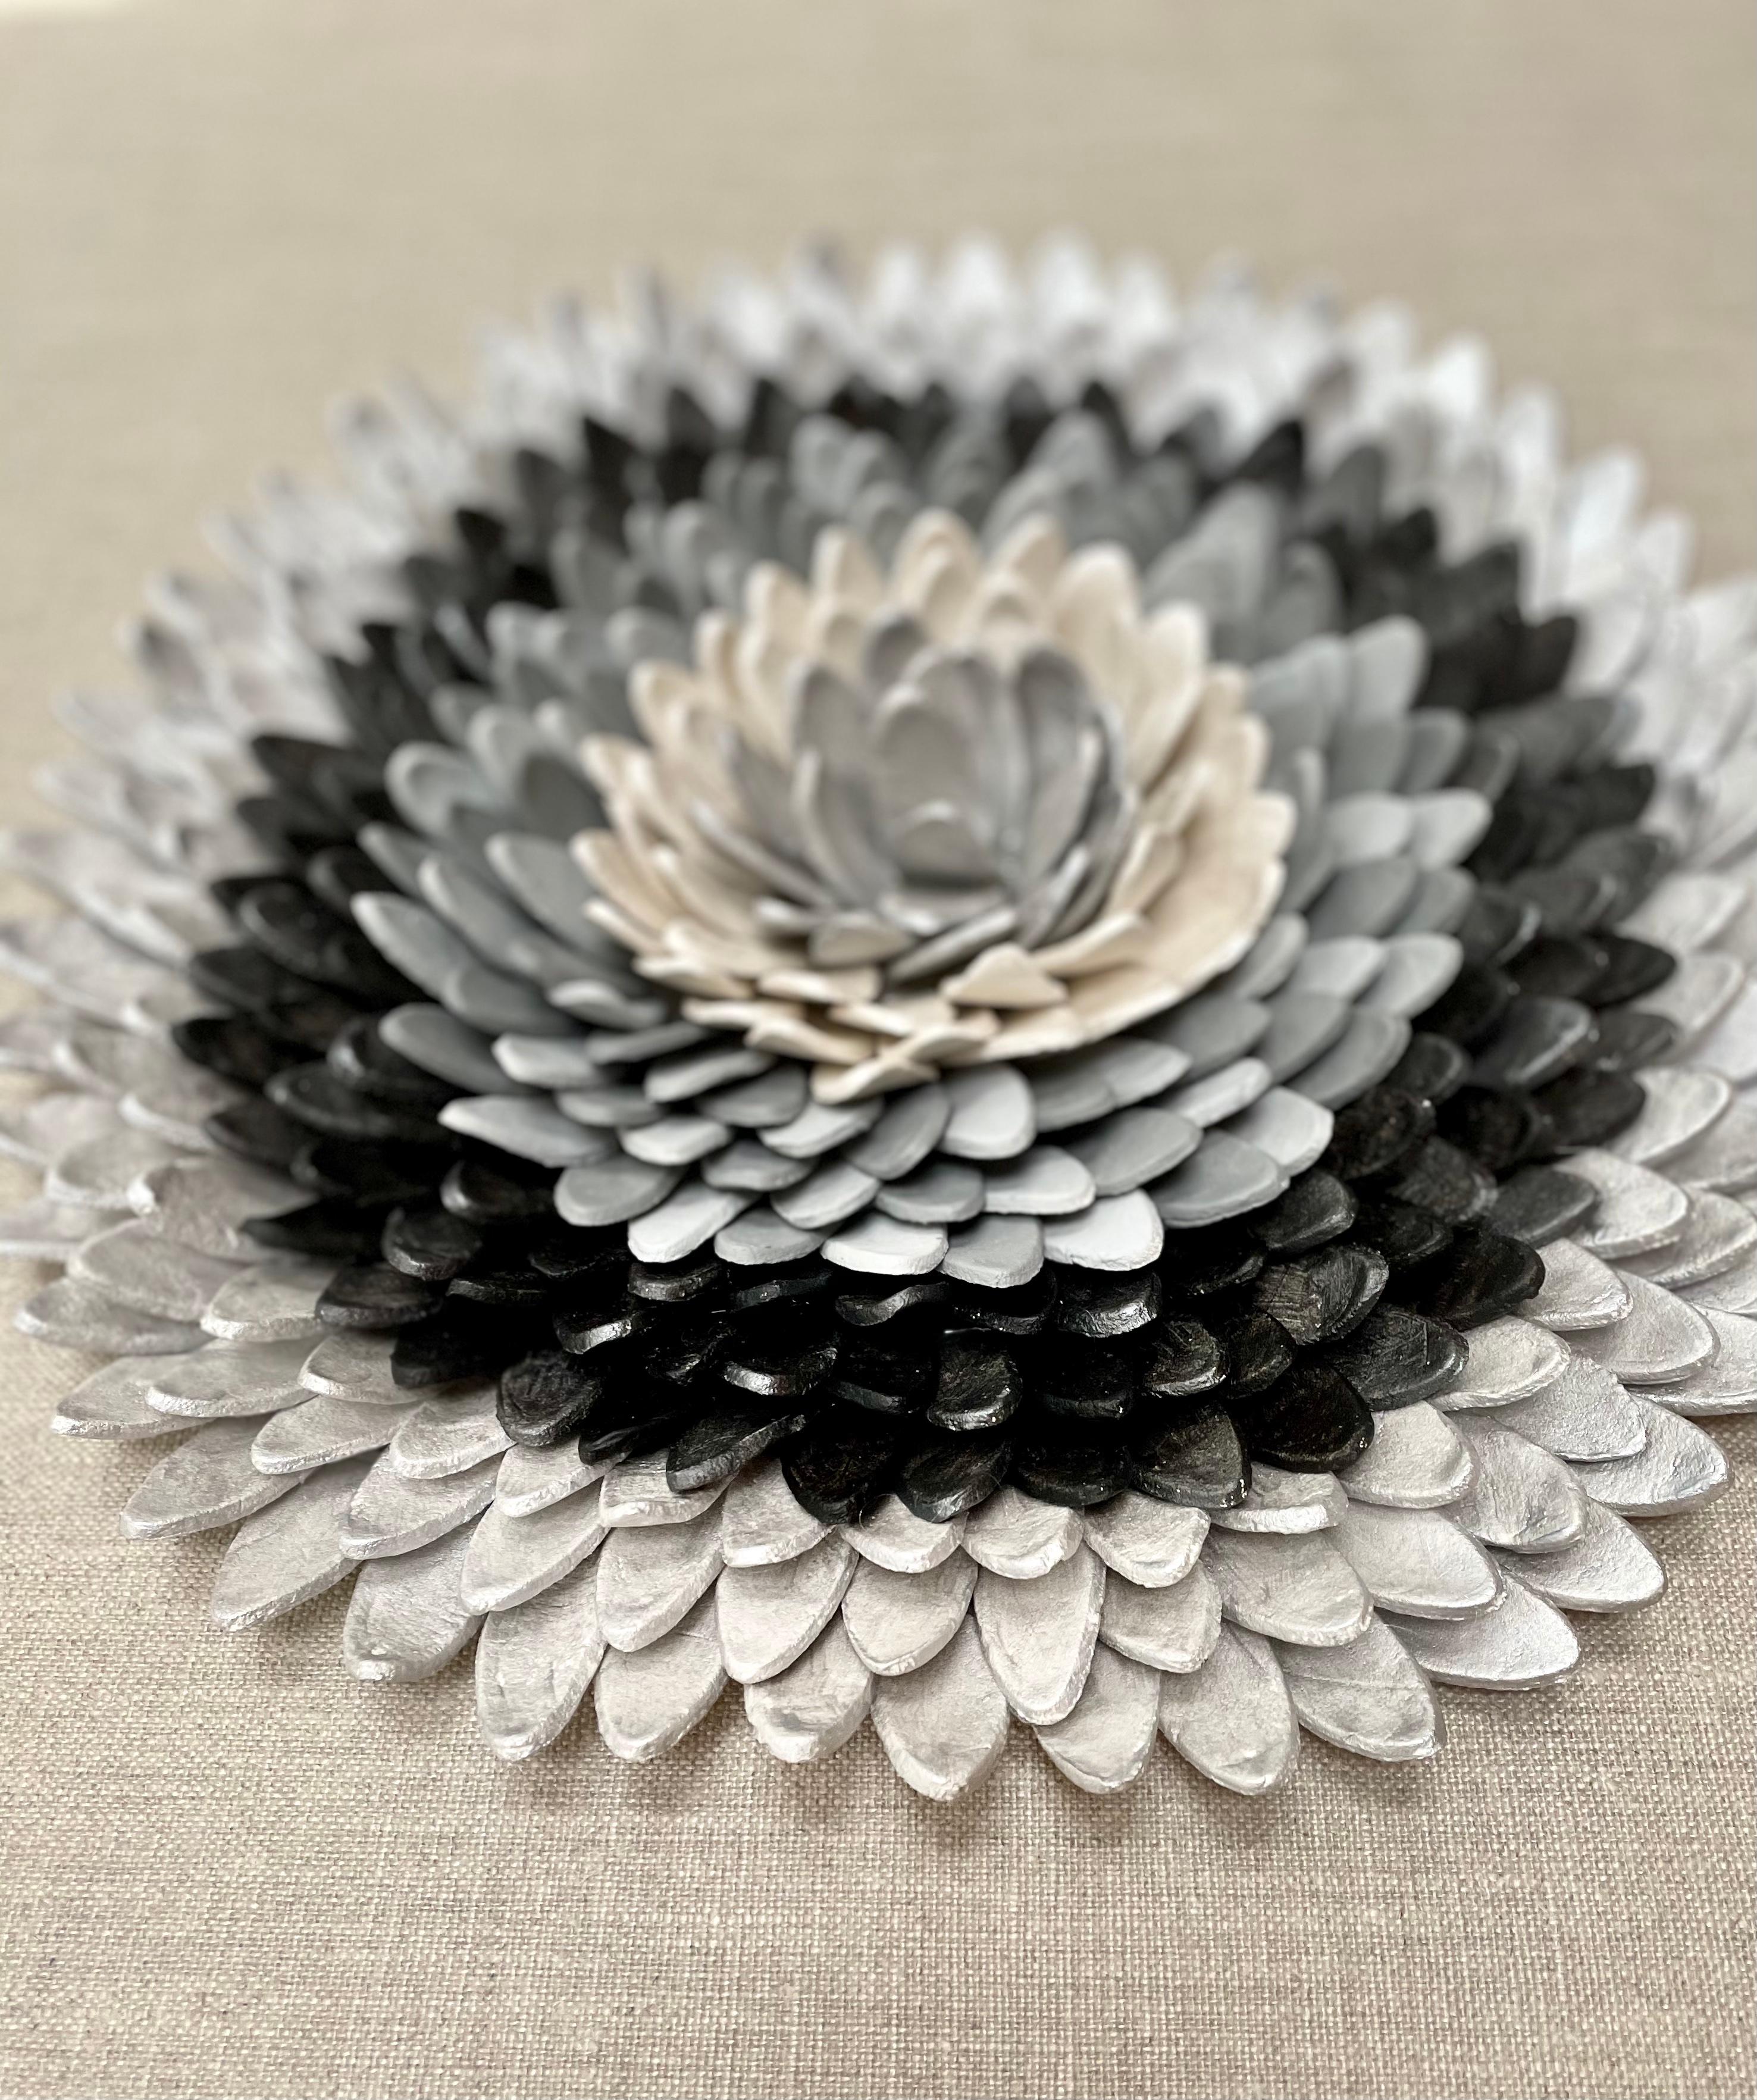 Flos 1 - composition en argile argentée grise à motifs floraux inspirés de la nature en 3D dans une boîte en plexiglas - Contemporain Mixed Media Art par Marie Laforey